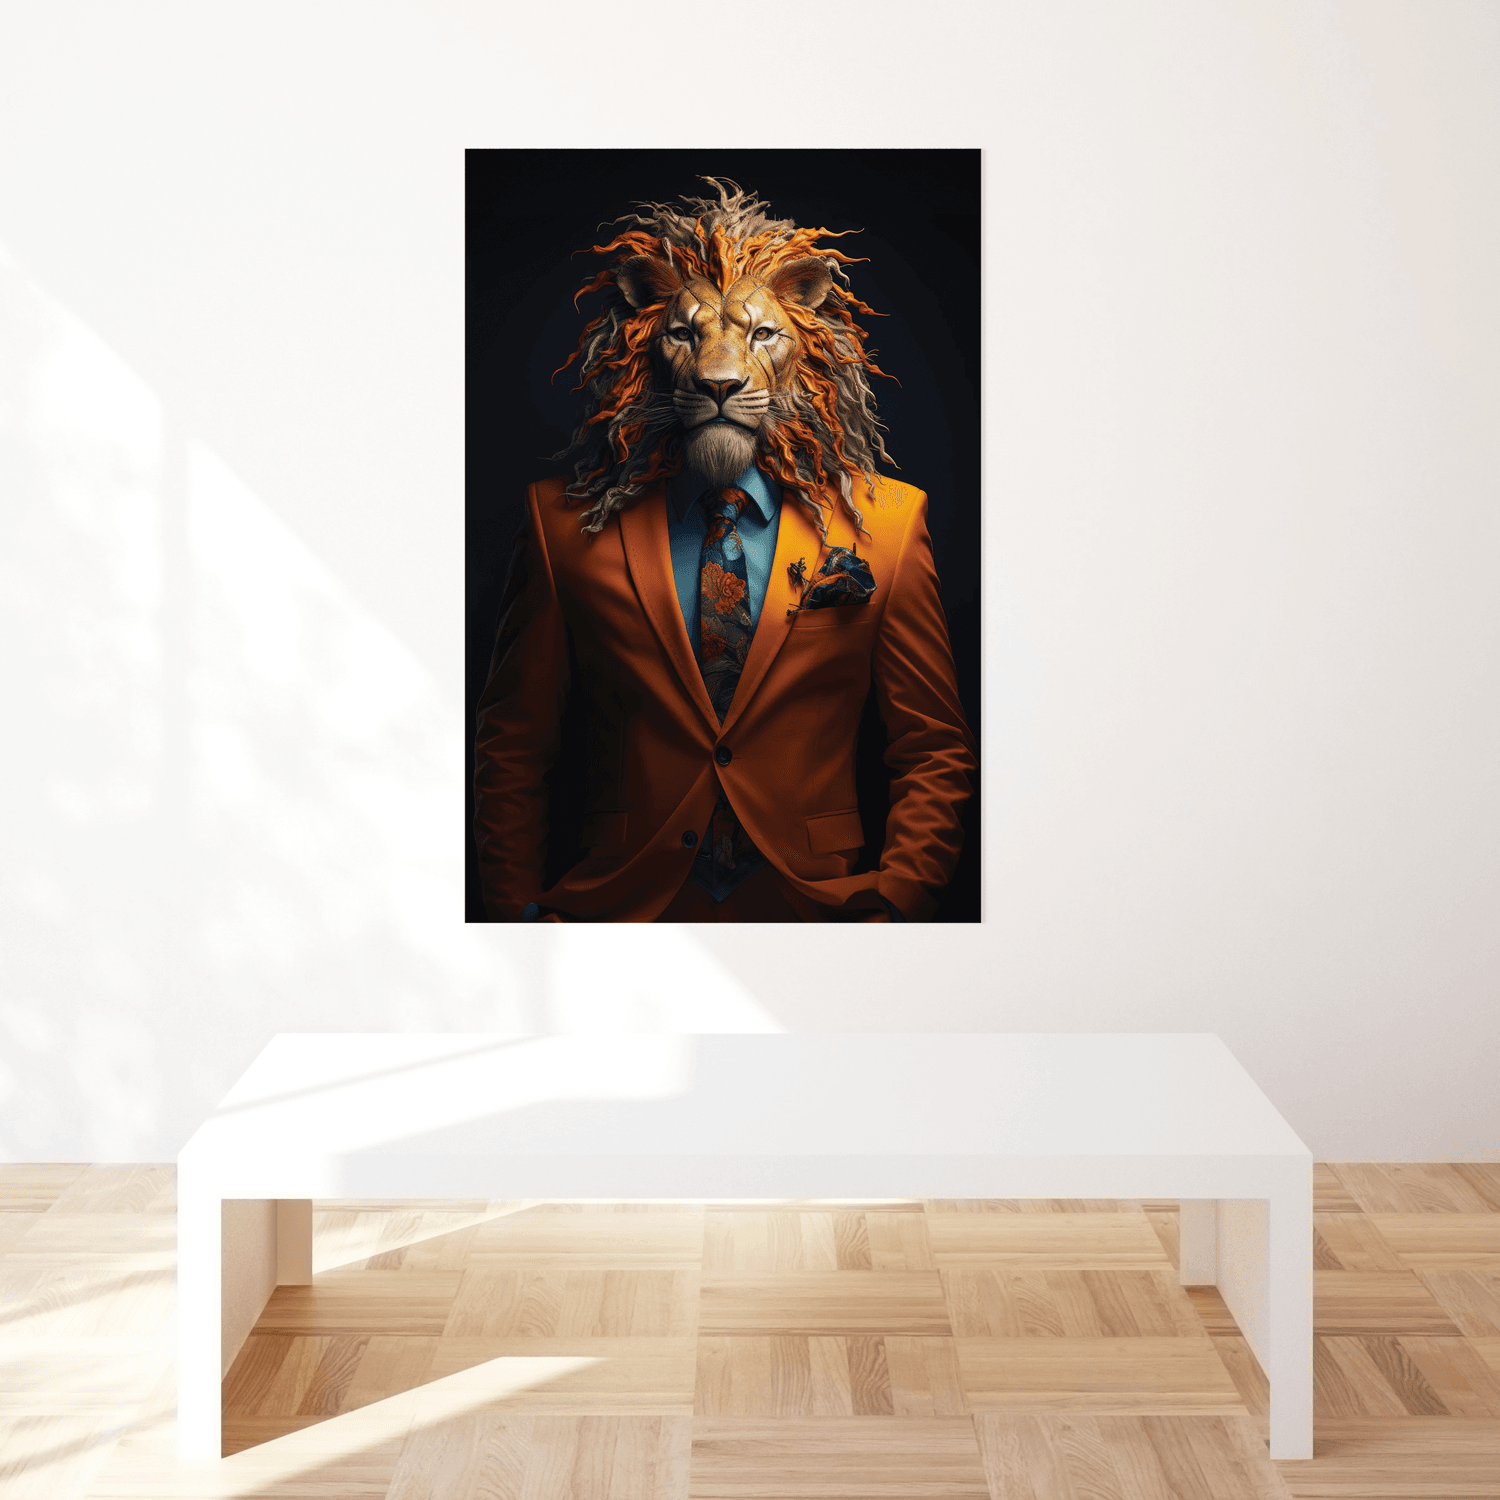 Portakal Aslan-Orange Lion